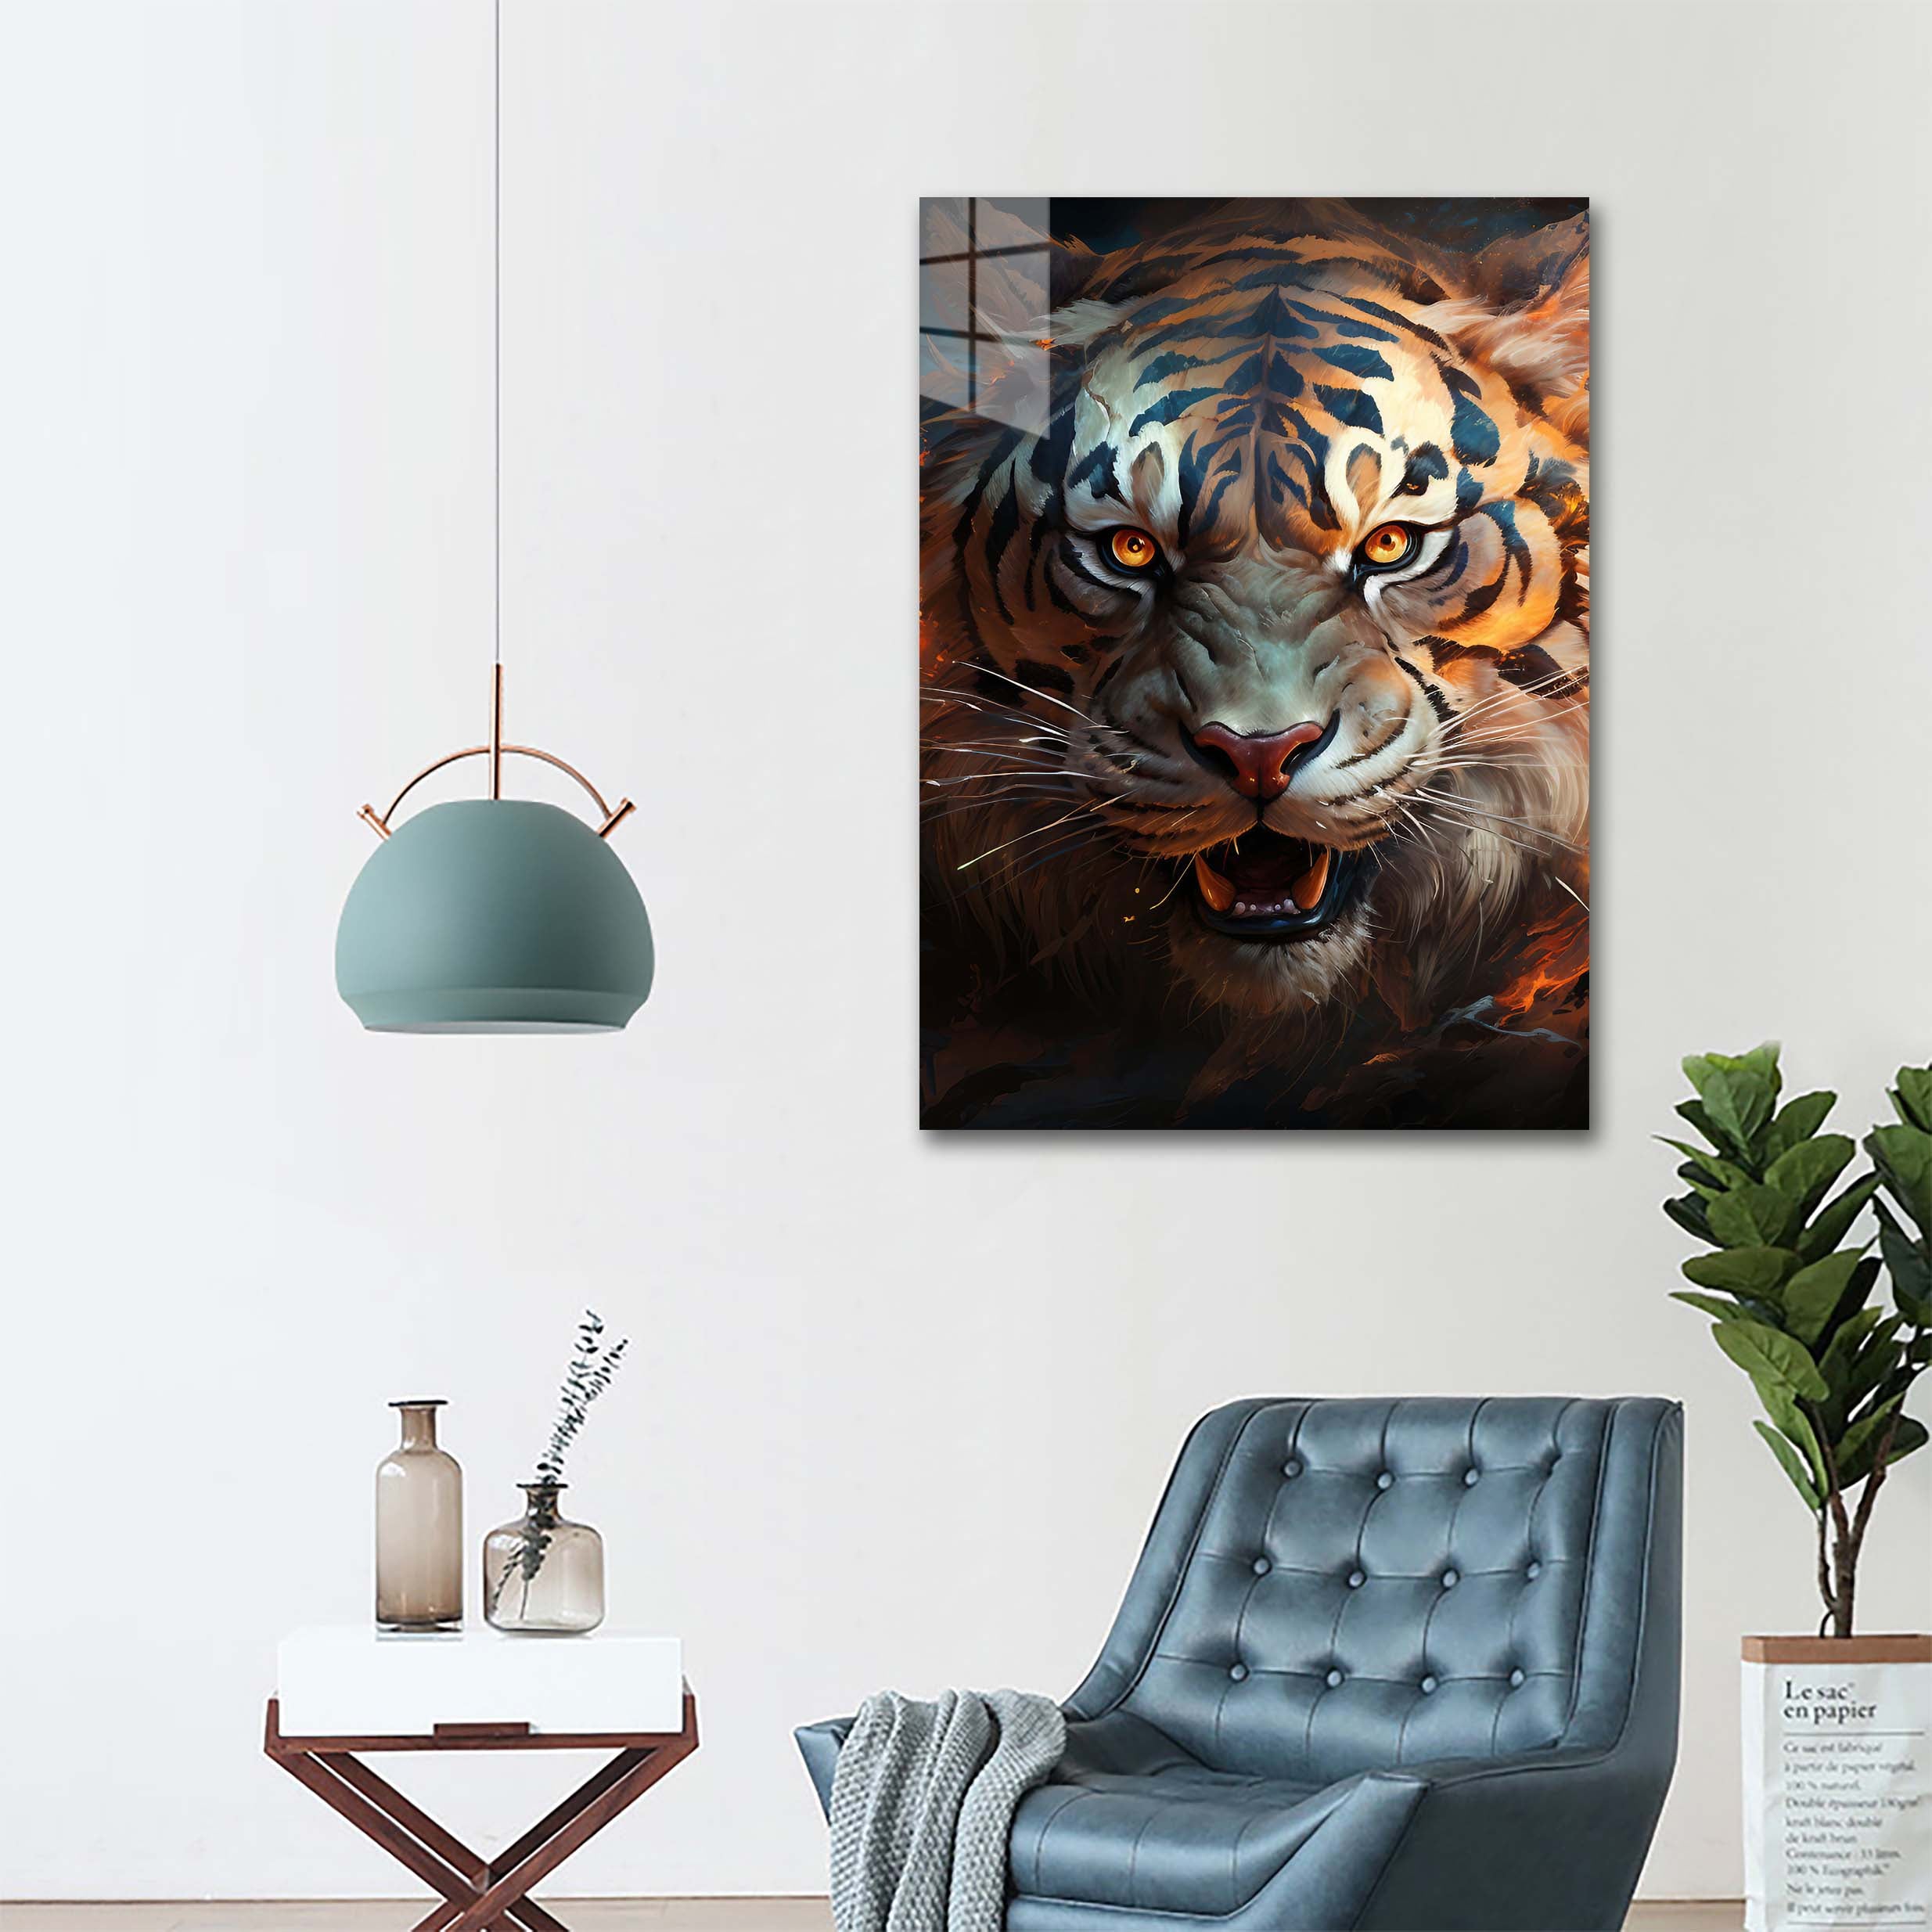 Eyes of the Tiger-designed by @Destinctivart